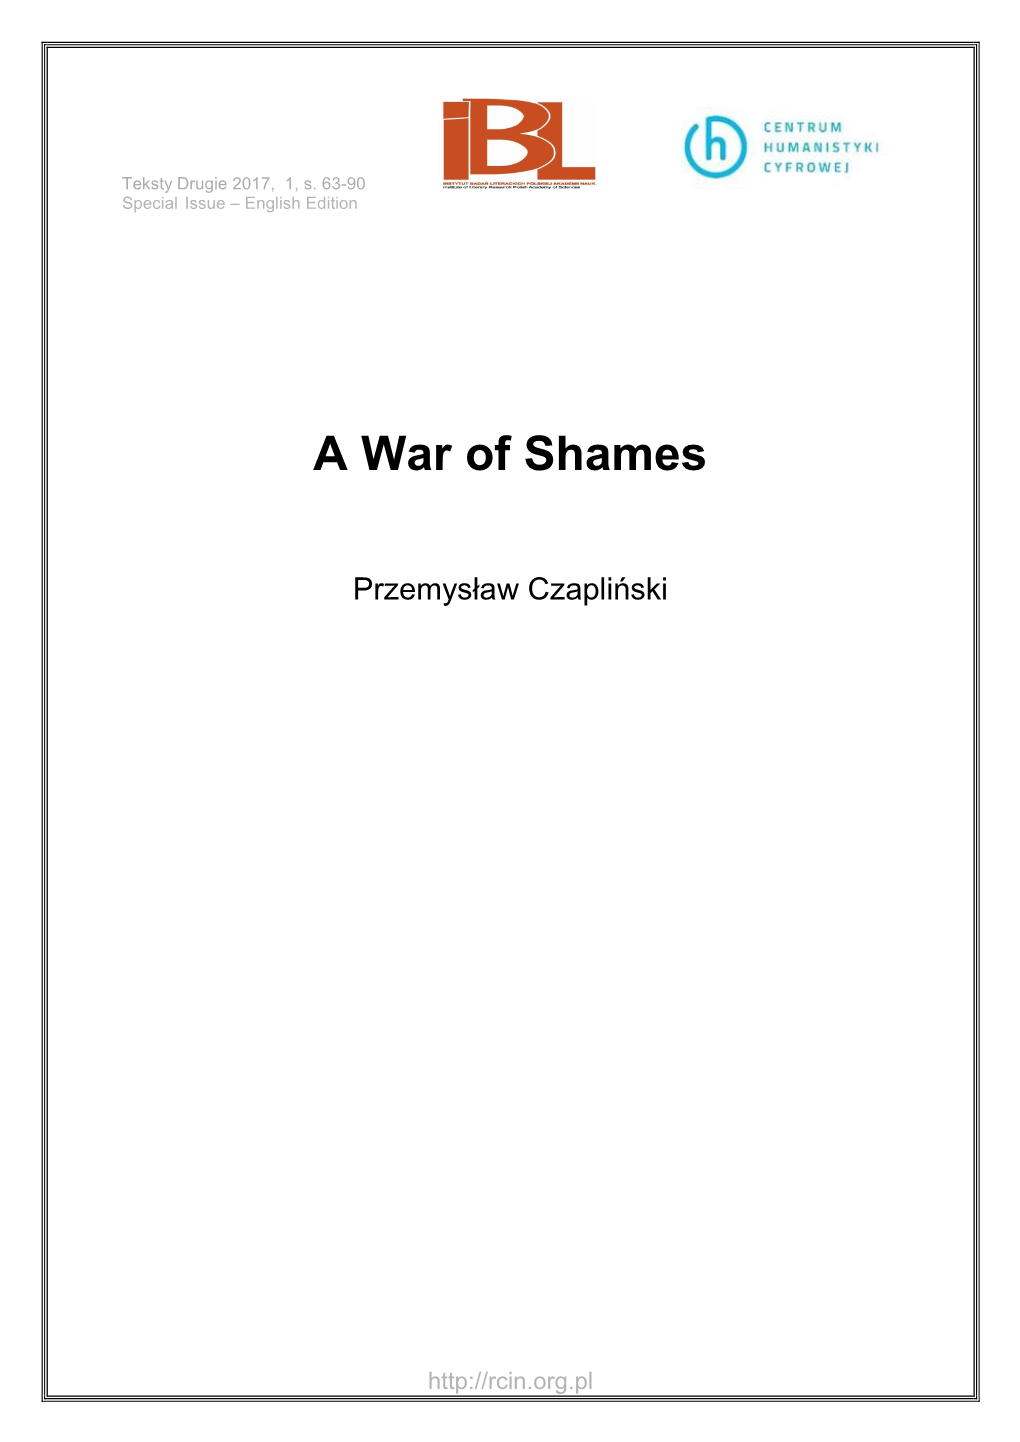 A War of Shames